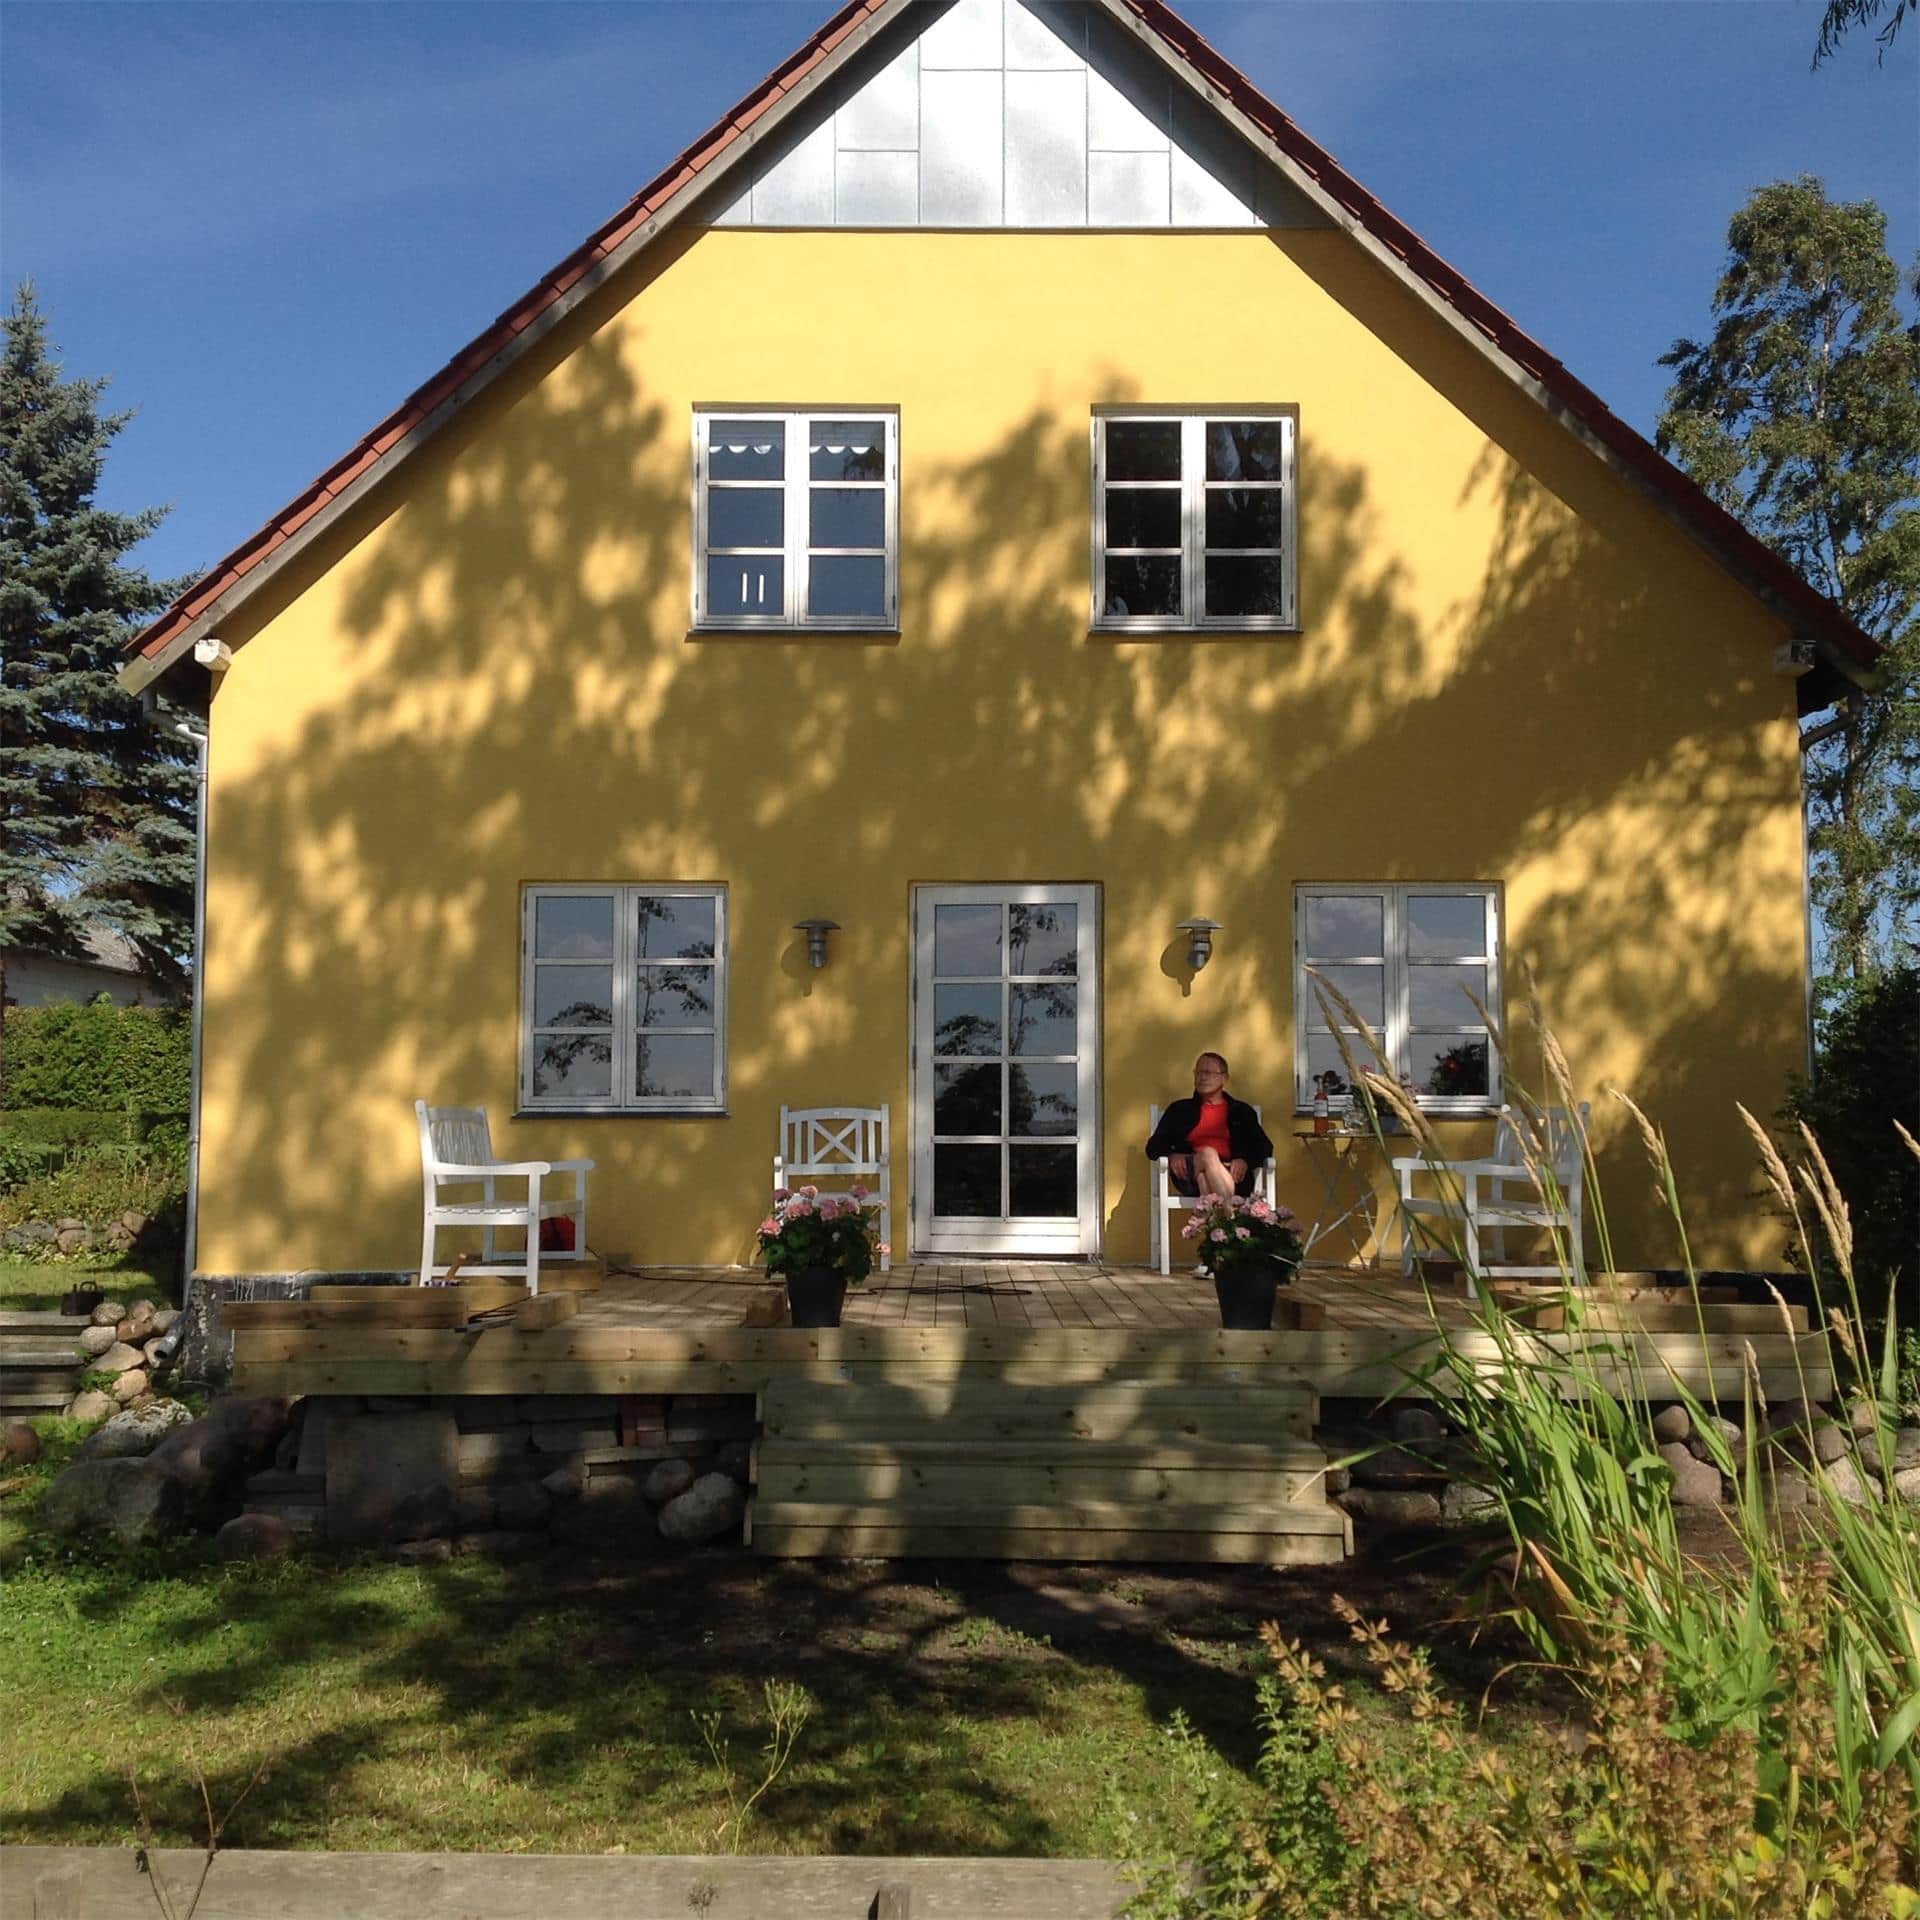 Image 0-15 Holiday-home 4202, Lisbjergvej 1, DK - 4791 Borre